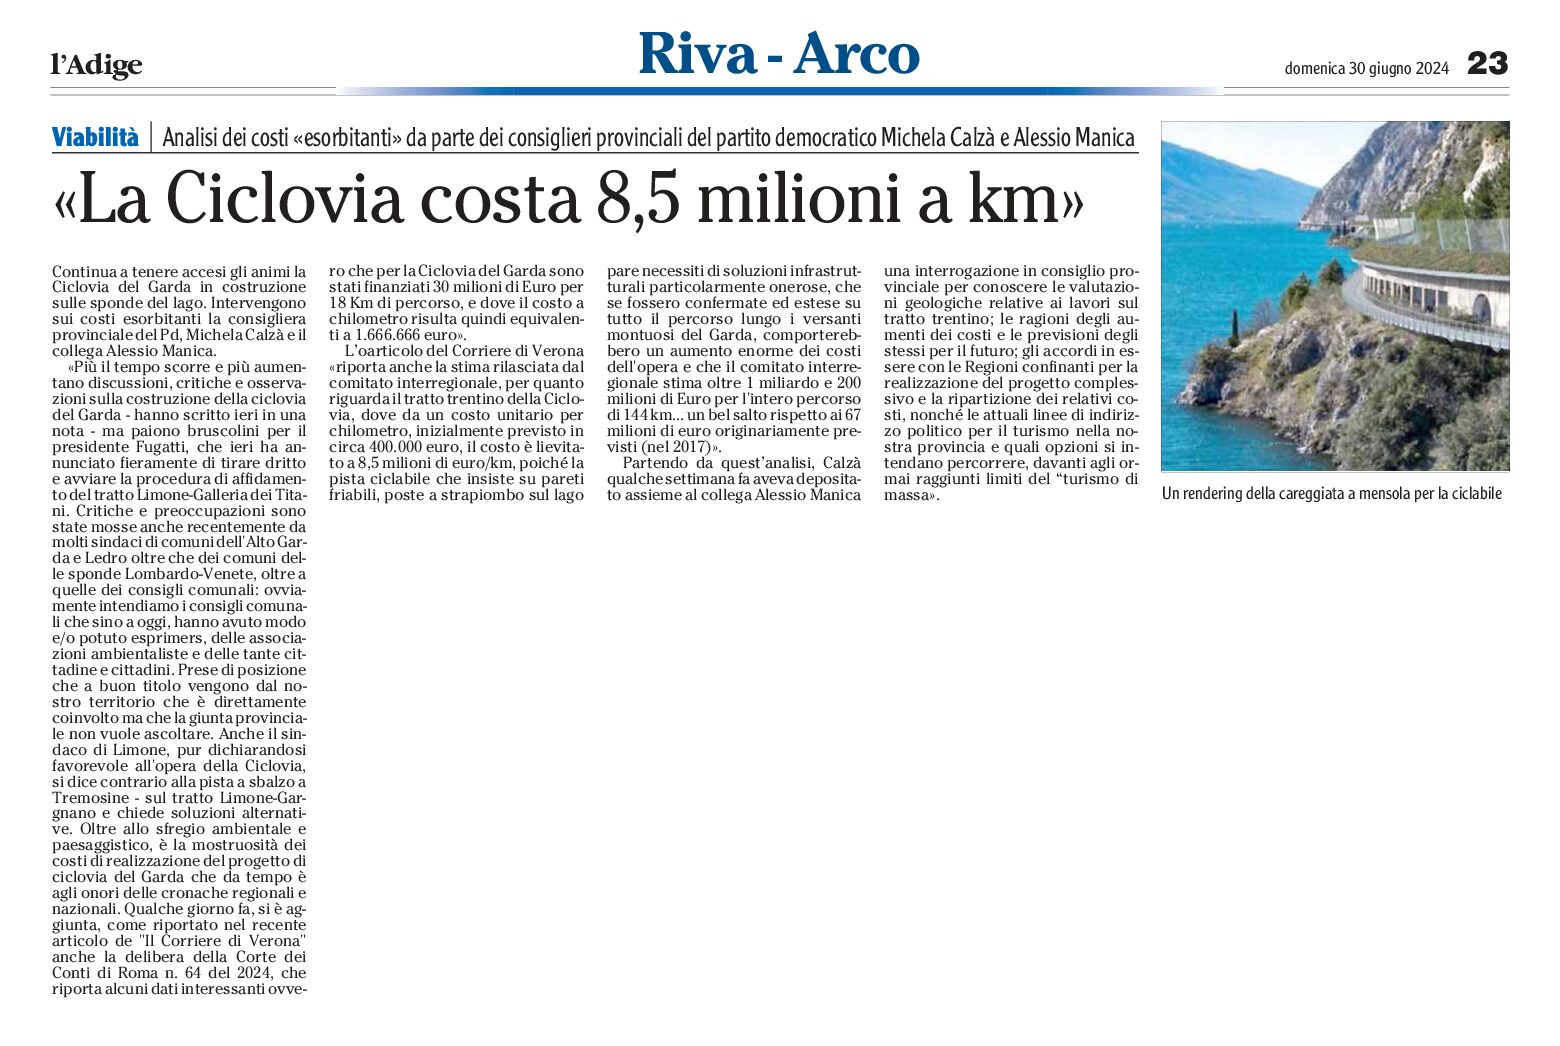 Riva, ciclovia: costa 8,5 milioni al km